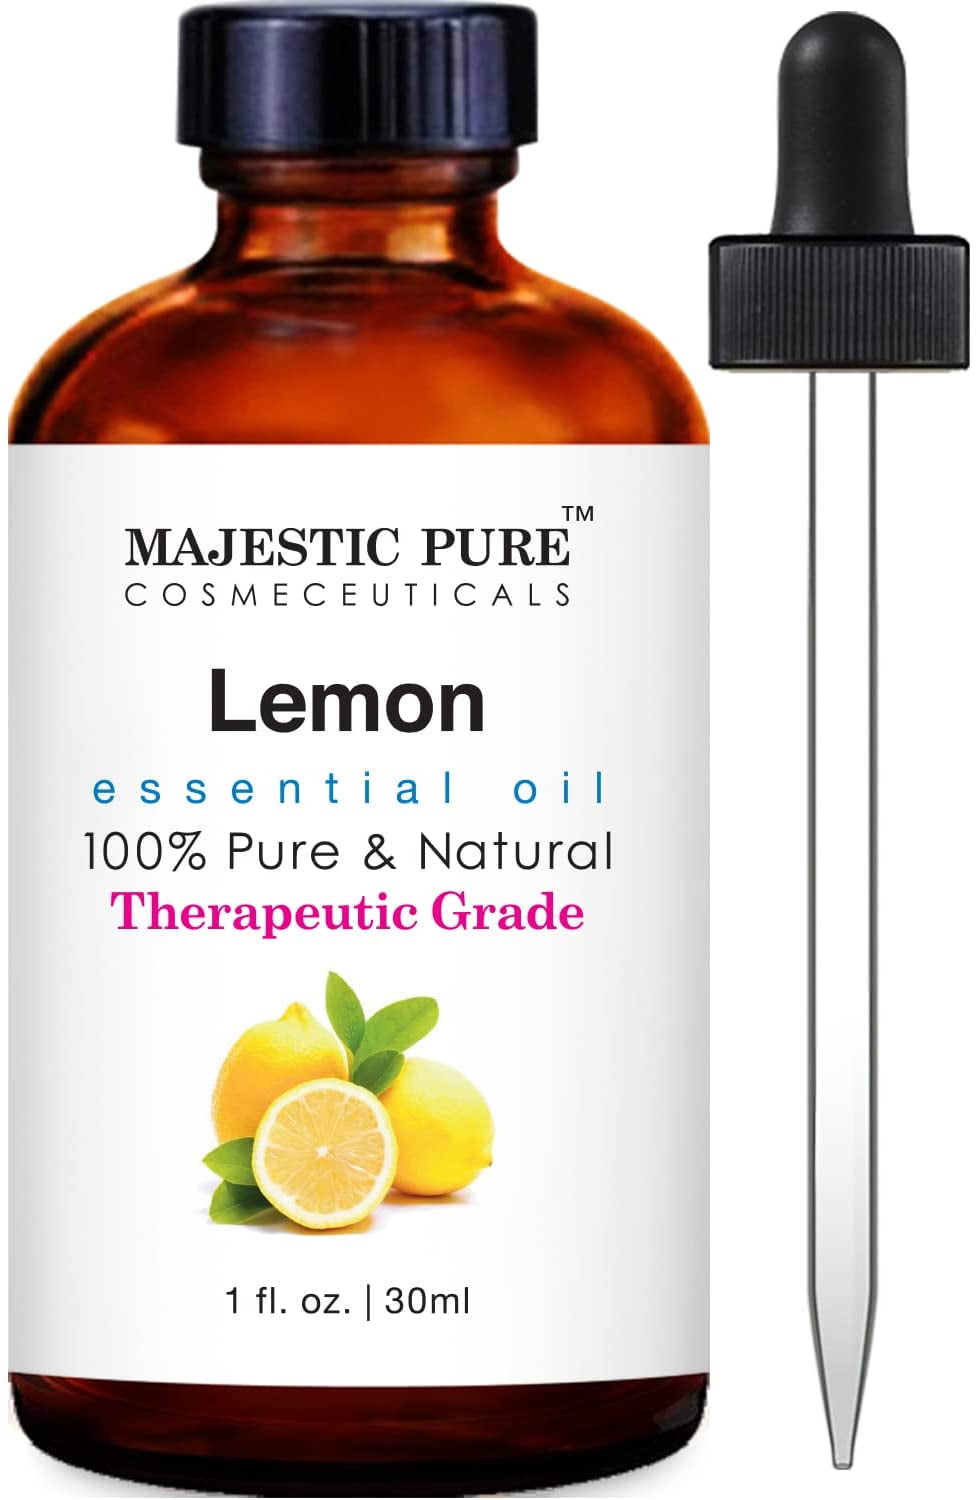 Lemon Oil For Skin - Make Your Skin Fresh And Invigorated - BetterMe